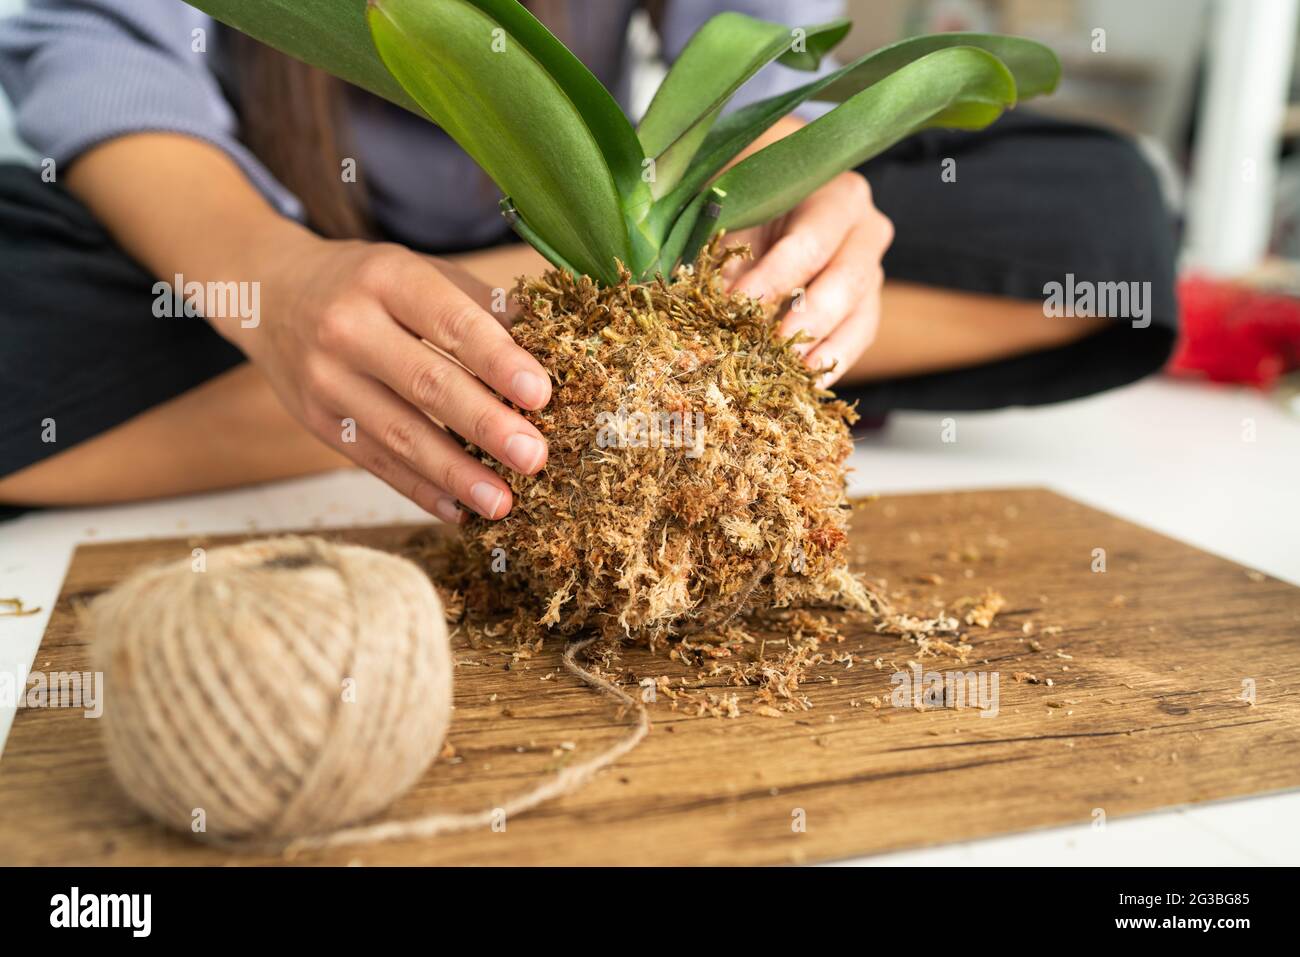 DIY Heimtextilien mit Luft Pflanze hängen japanischen Moos Ball. Frau, die Orchidee kokedama mit Moos und Seil macht. Gartenarbeit im Innenbereich Stockfoto